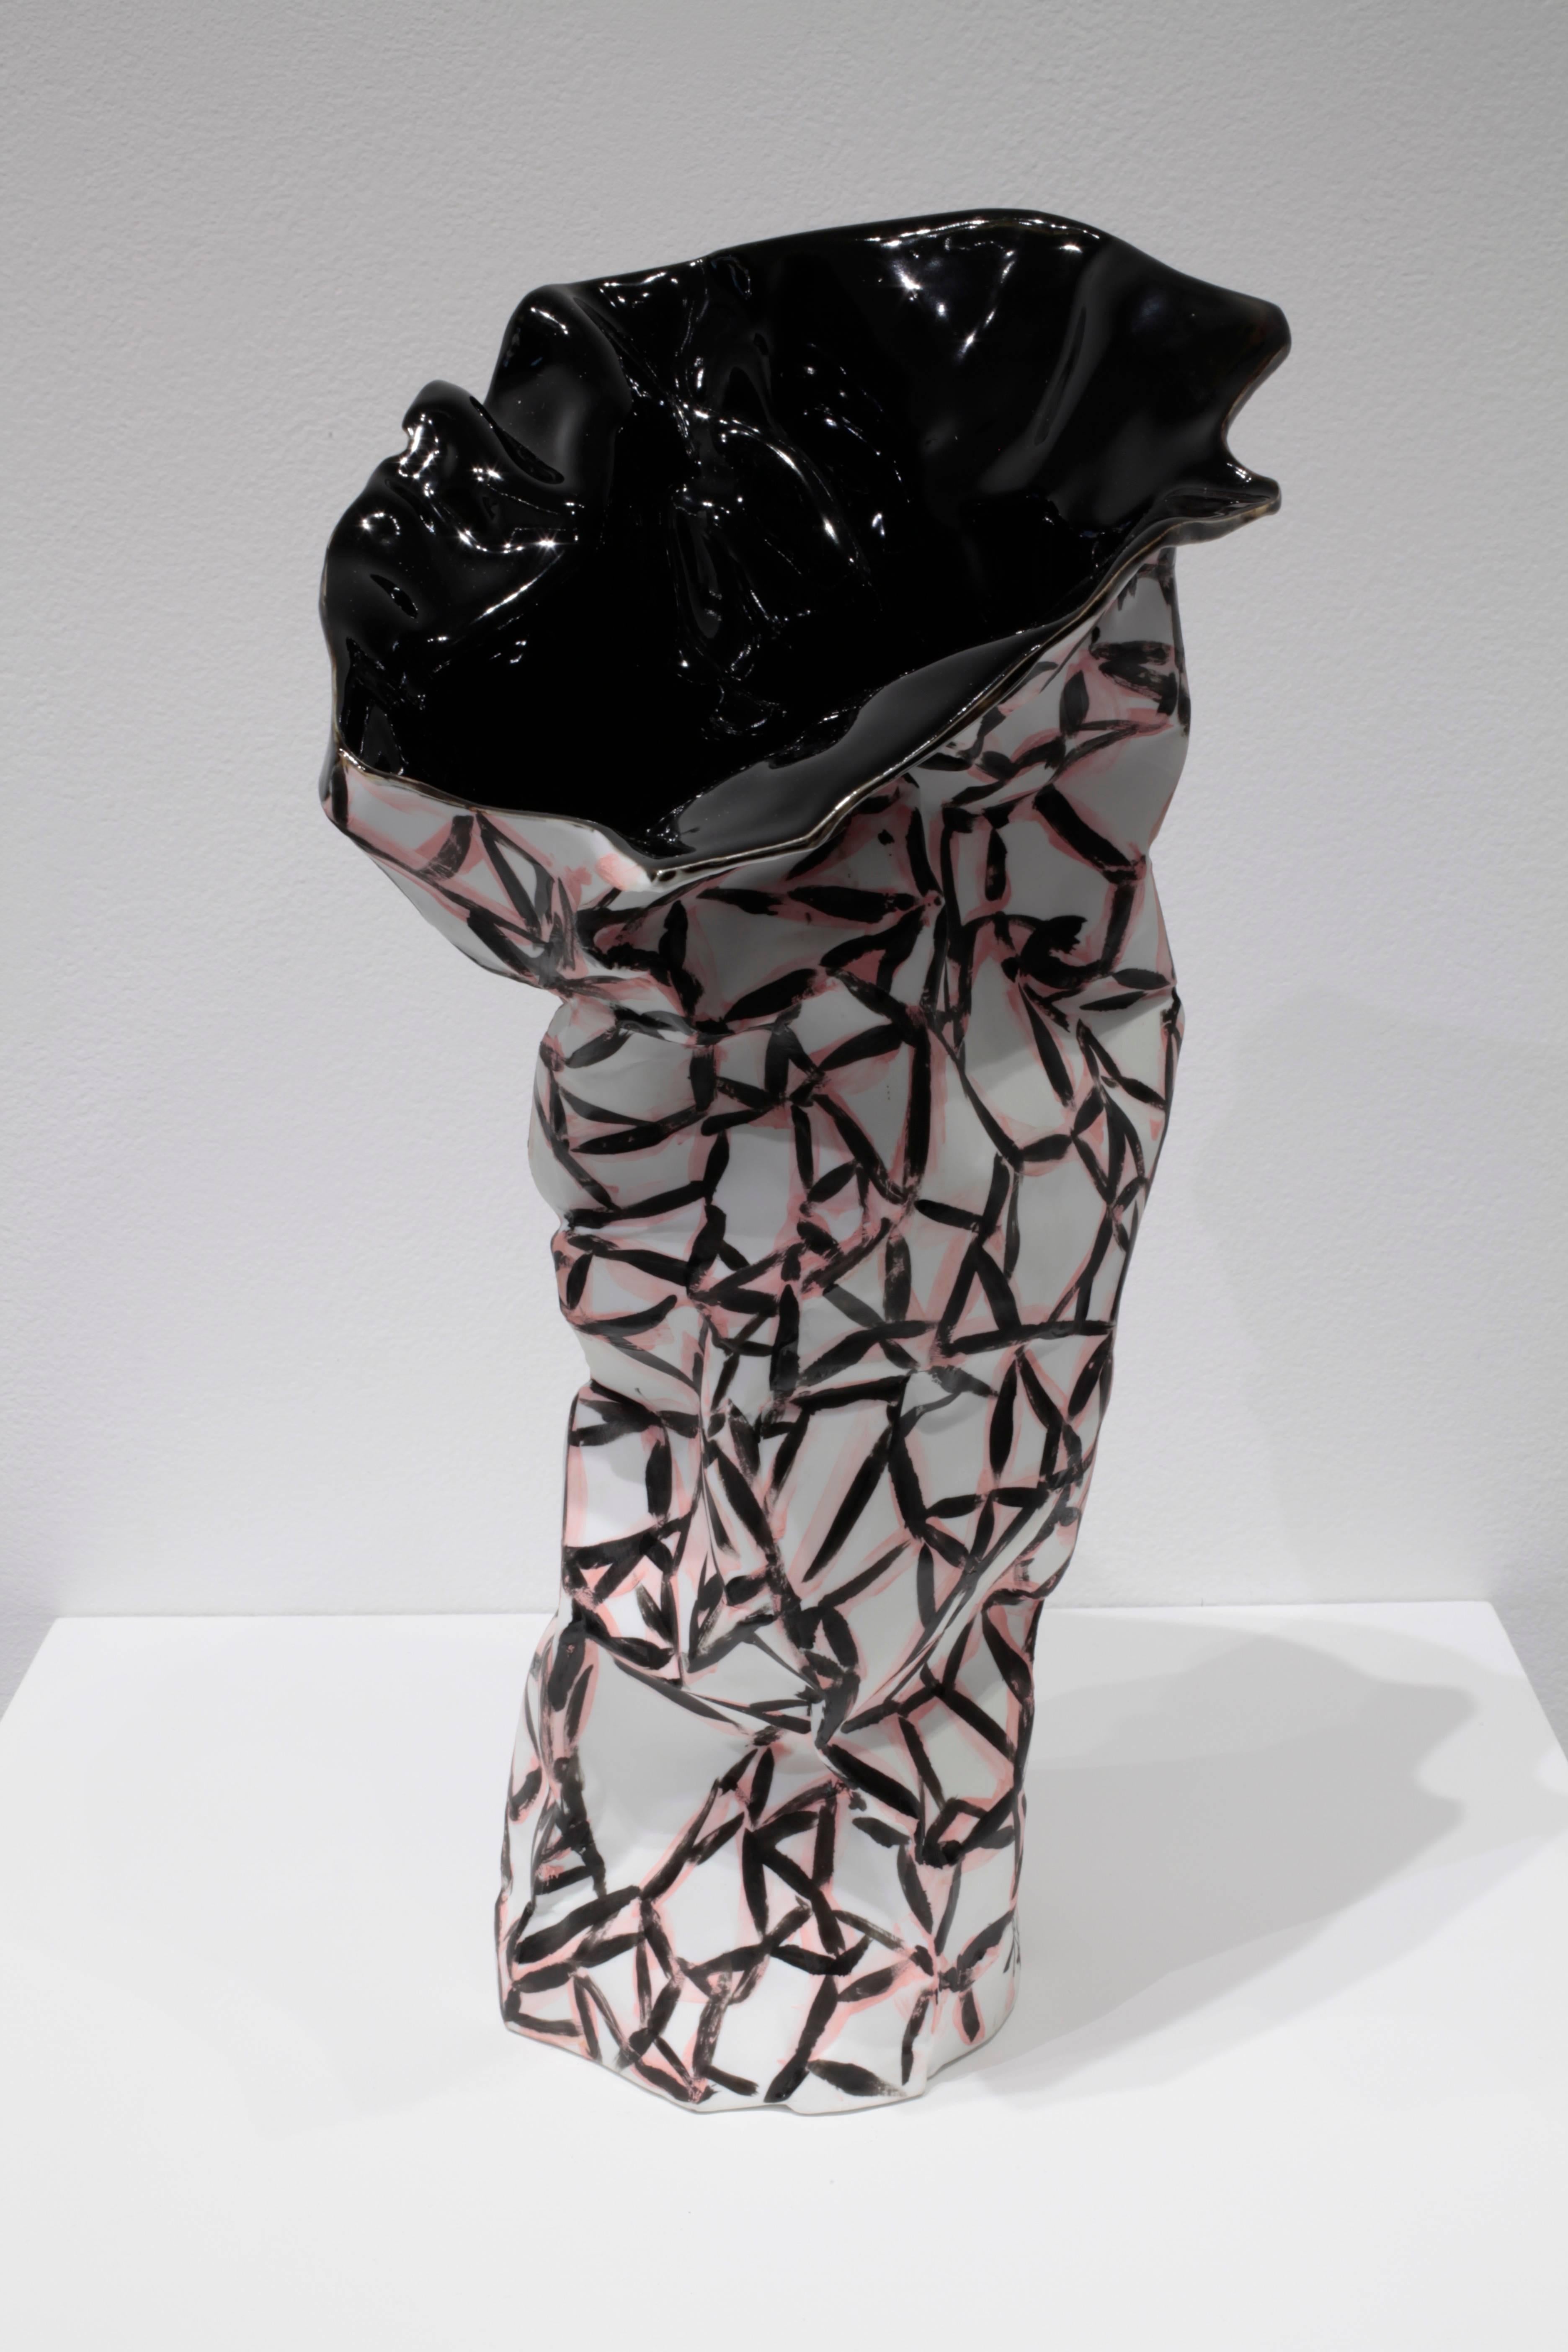 Terry Rose Abstract Sculpture - Jingdezhen 3